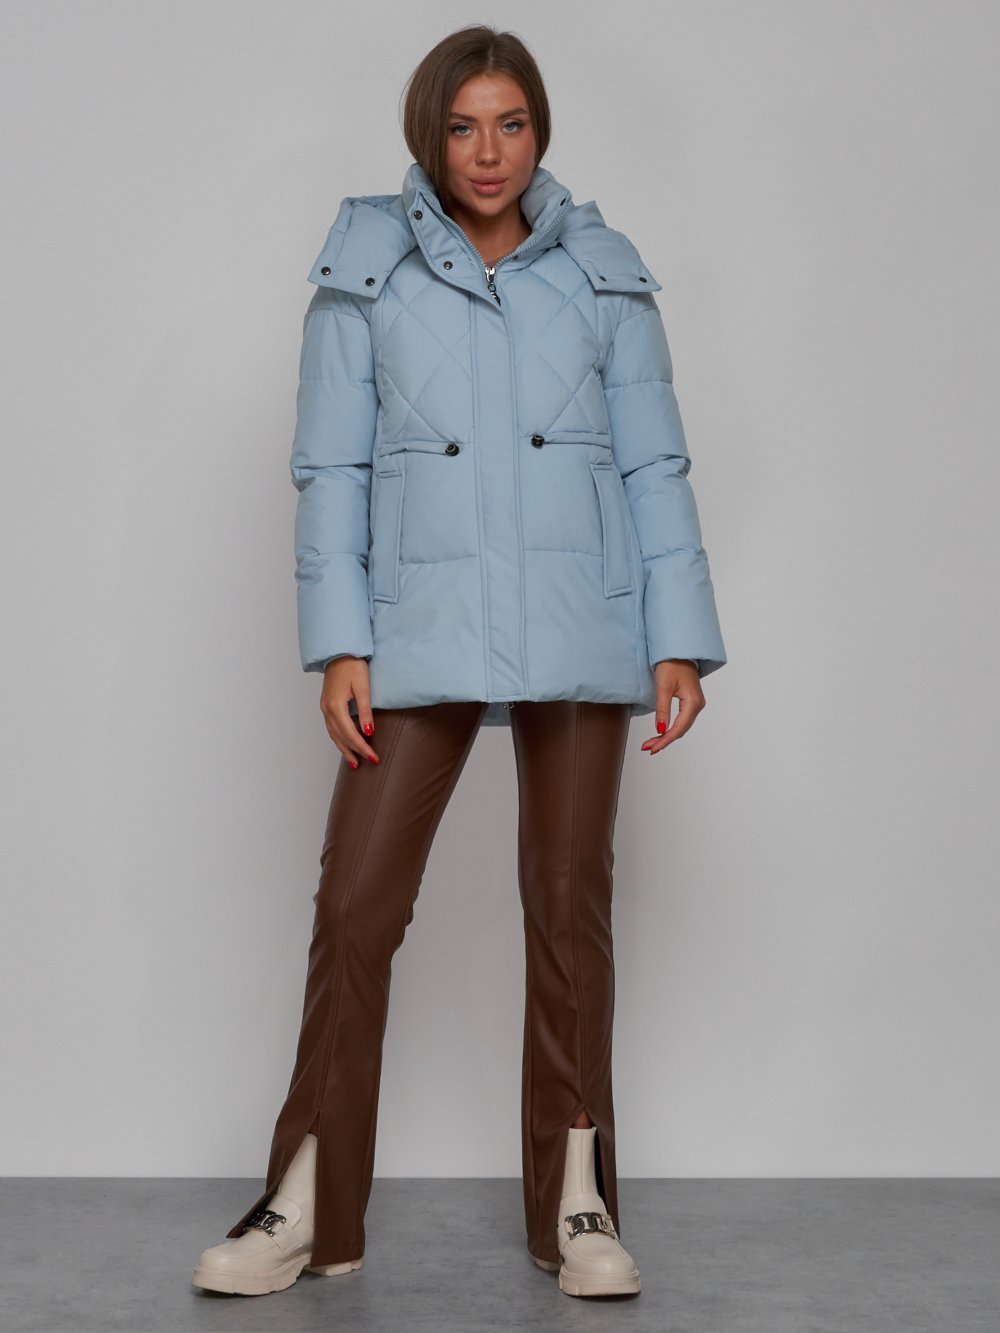 Купить оптом Зимняя женская куртка модная с капюшоном голубого цвета 52302Gl в Казани